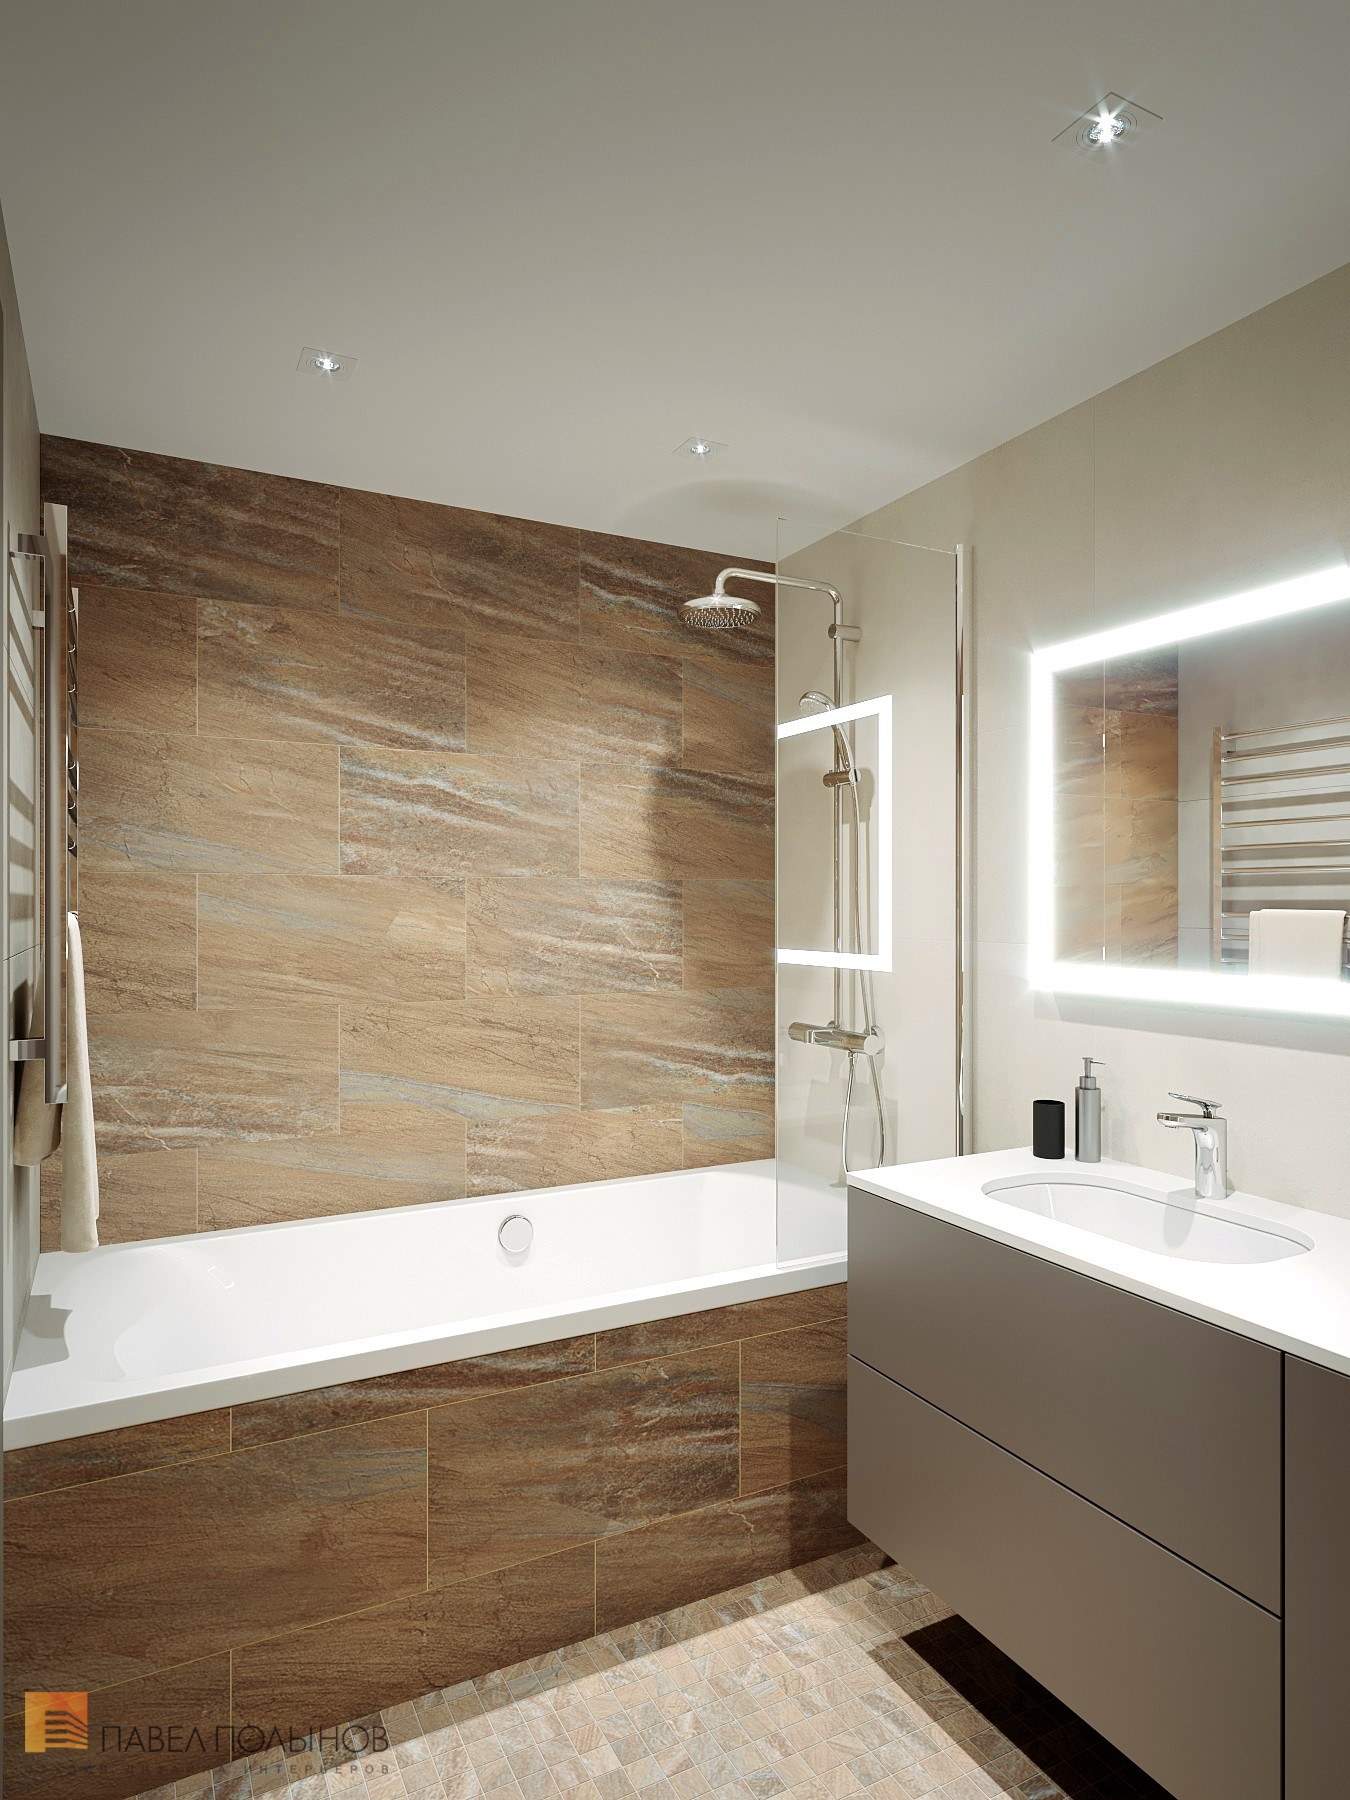 Фото дизайн ванной комнаты из проекта «Интерьер квартиры с современном стиле с элементами скандинавского, ЖК «Skandi Klubb», 77 кв.м.»